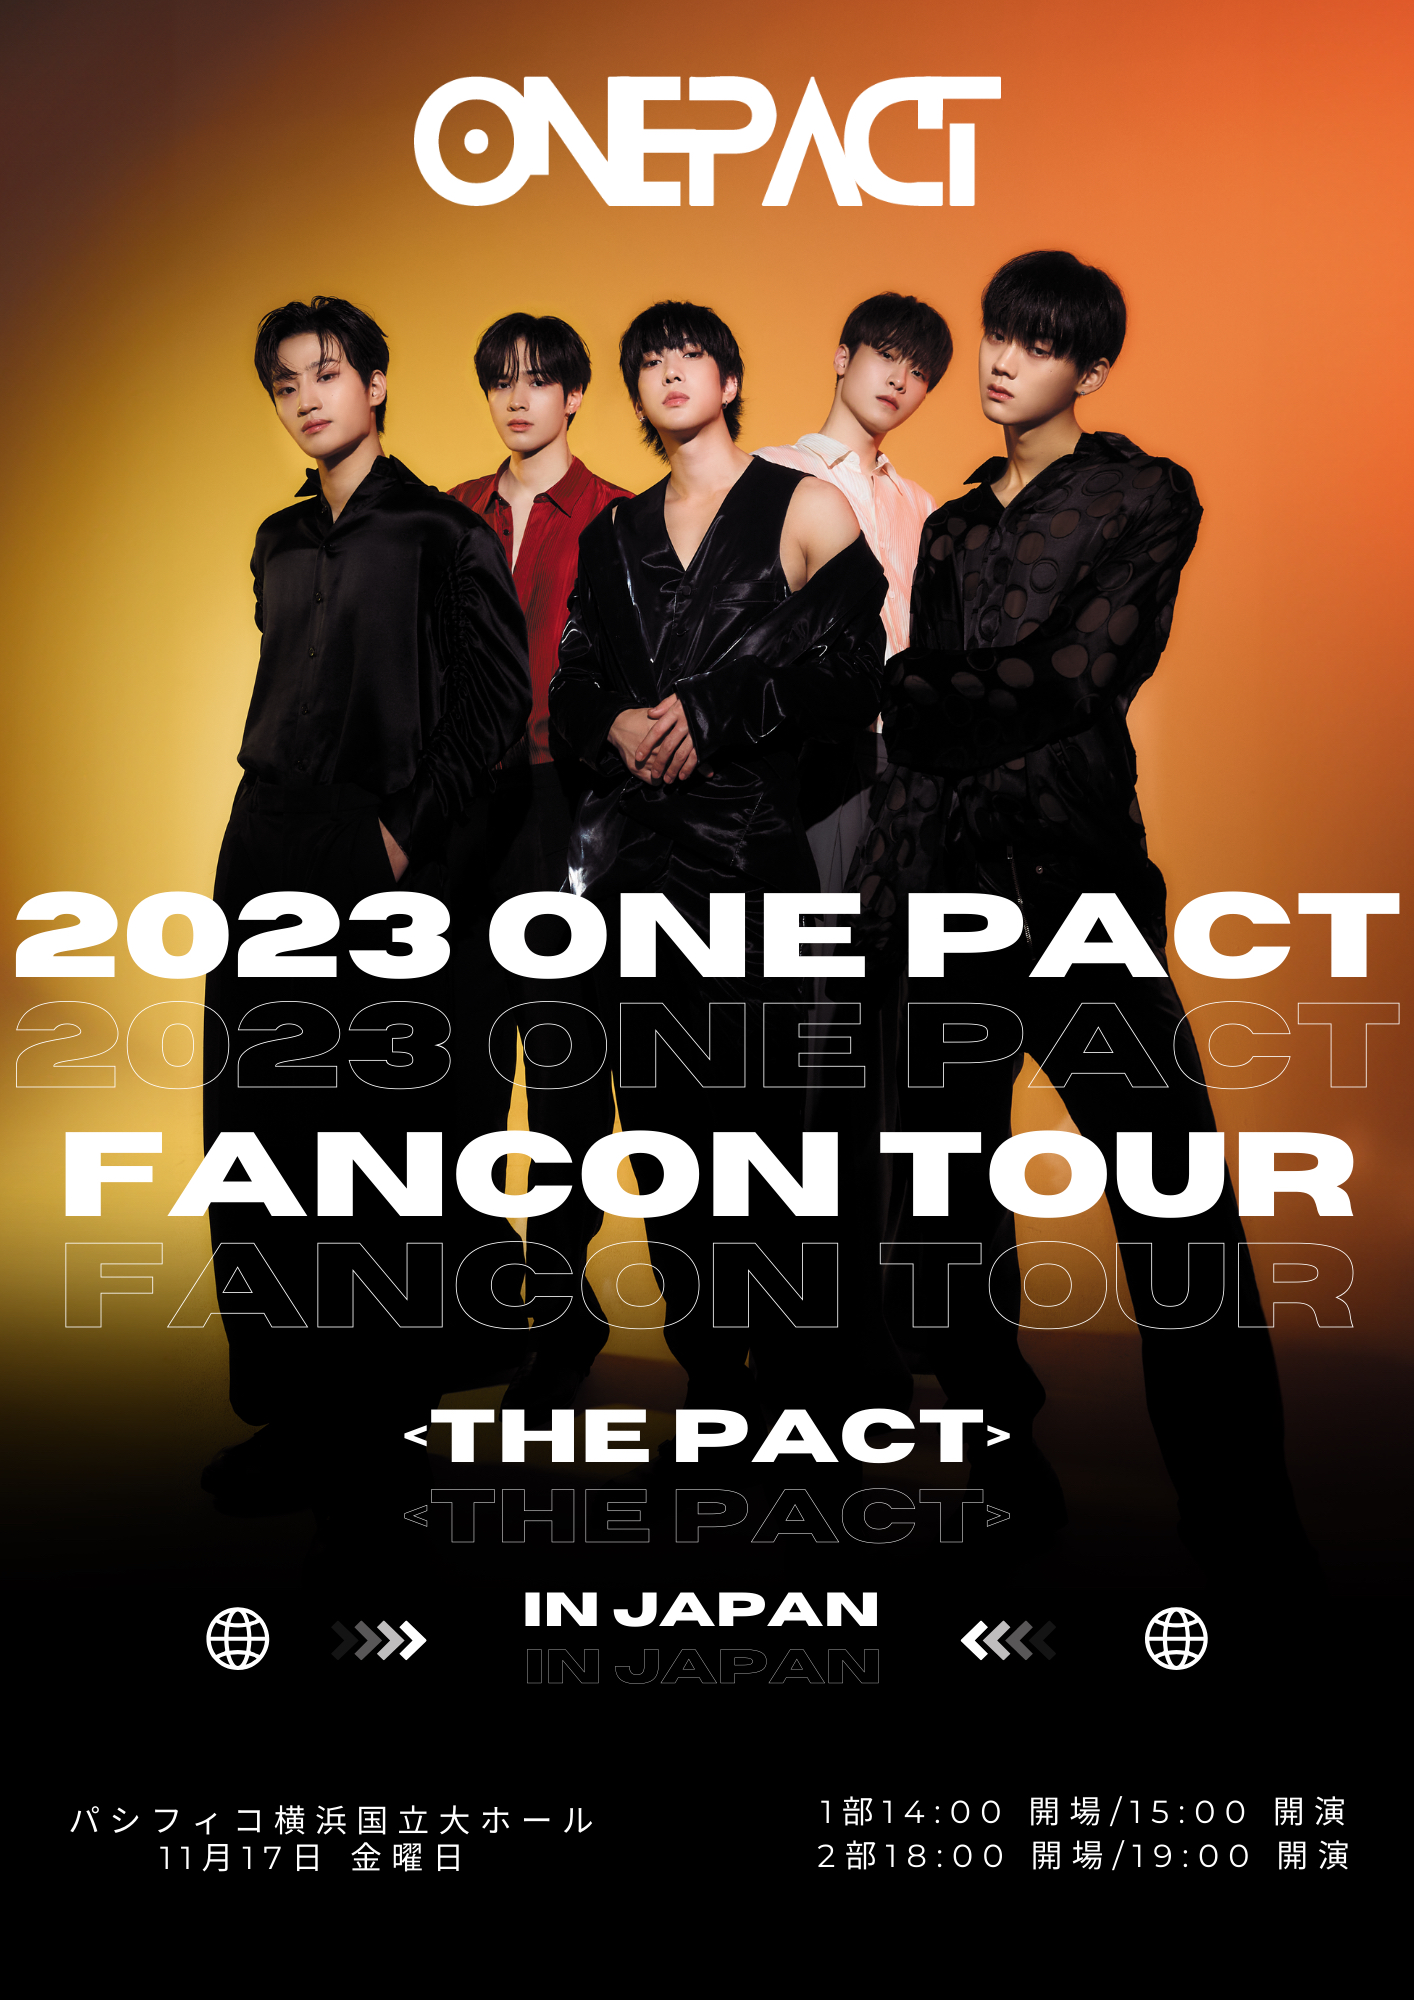 ボイプラ出演の5人組「ONE PACT」 日本公演の新ポスター解禁 | 推しが 